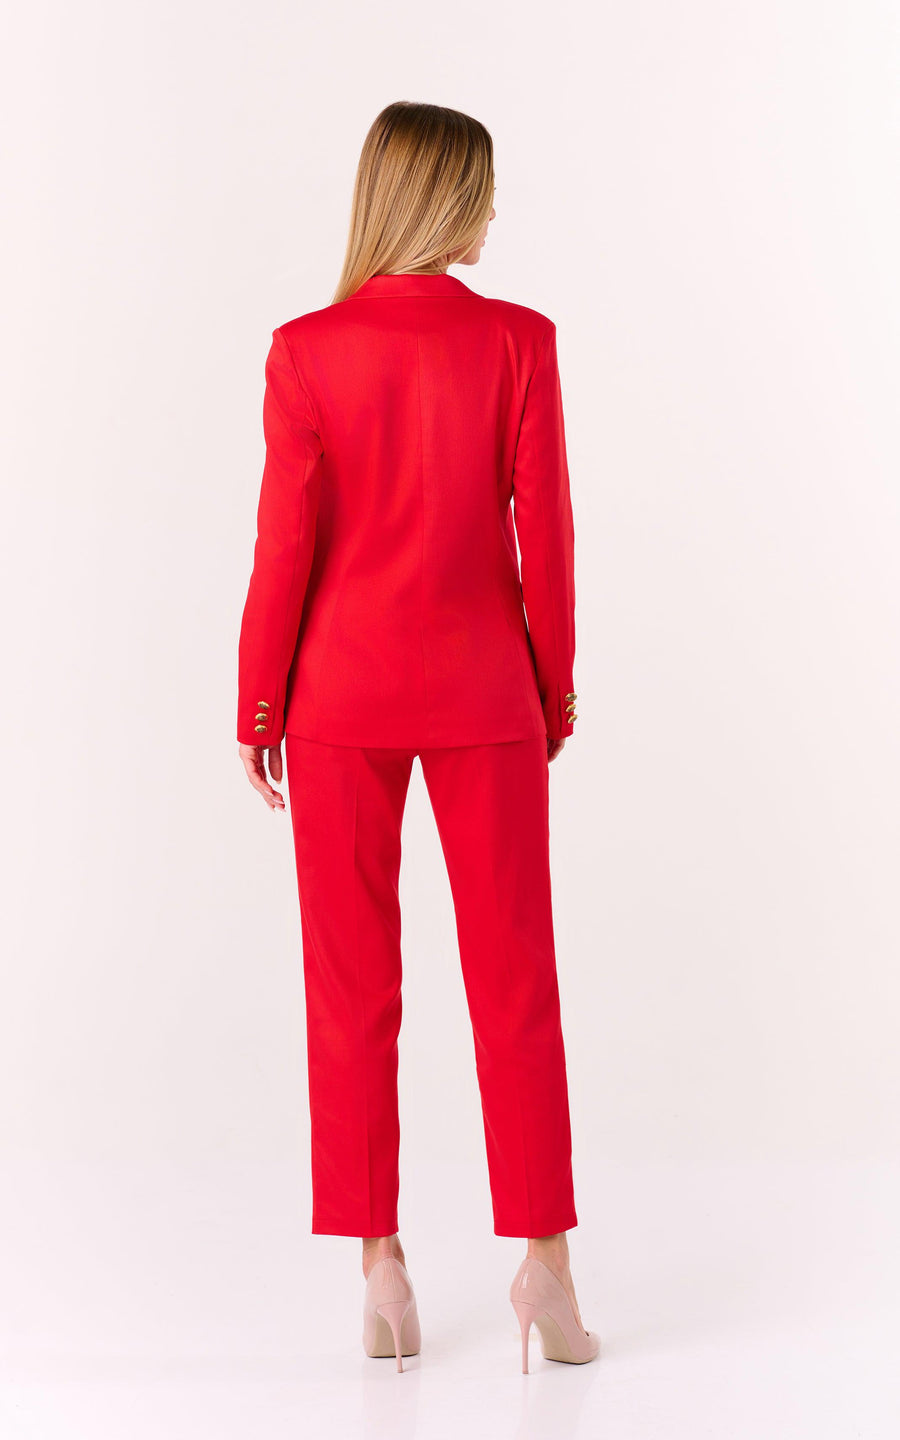 ATLANTIDA Suit Red